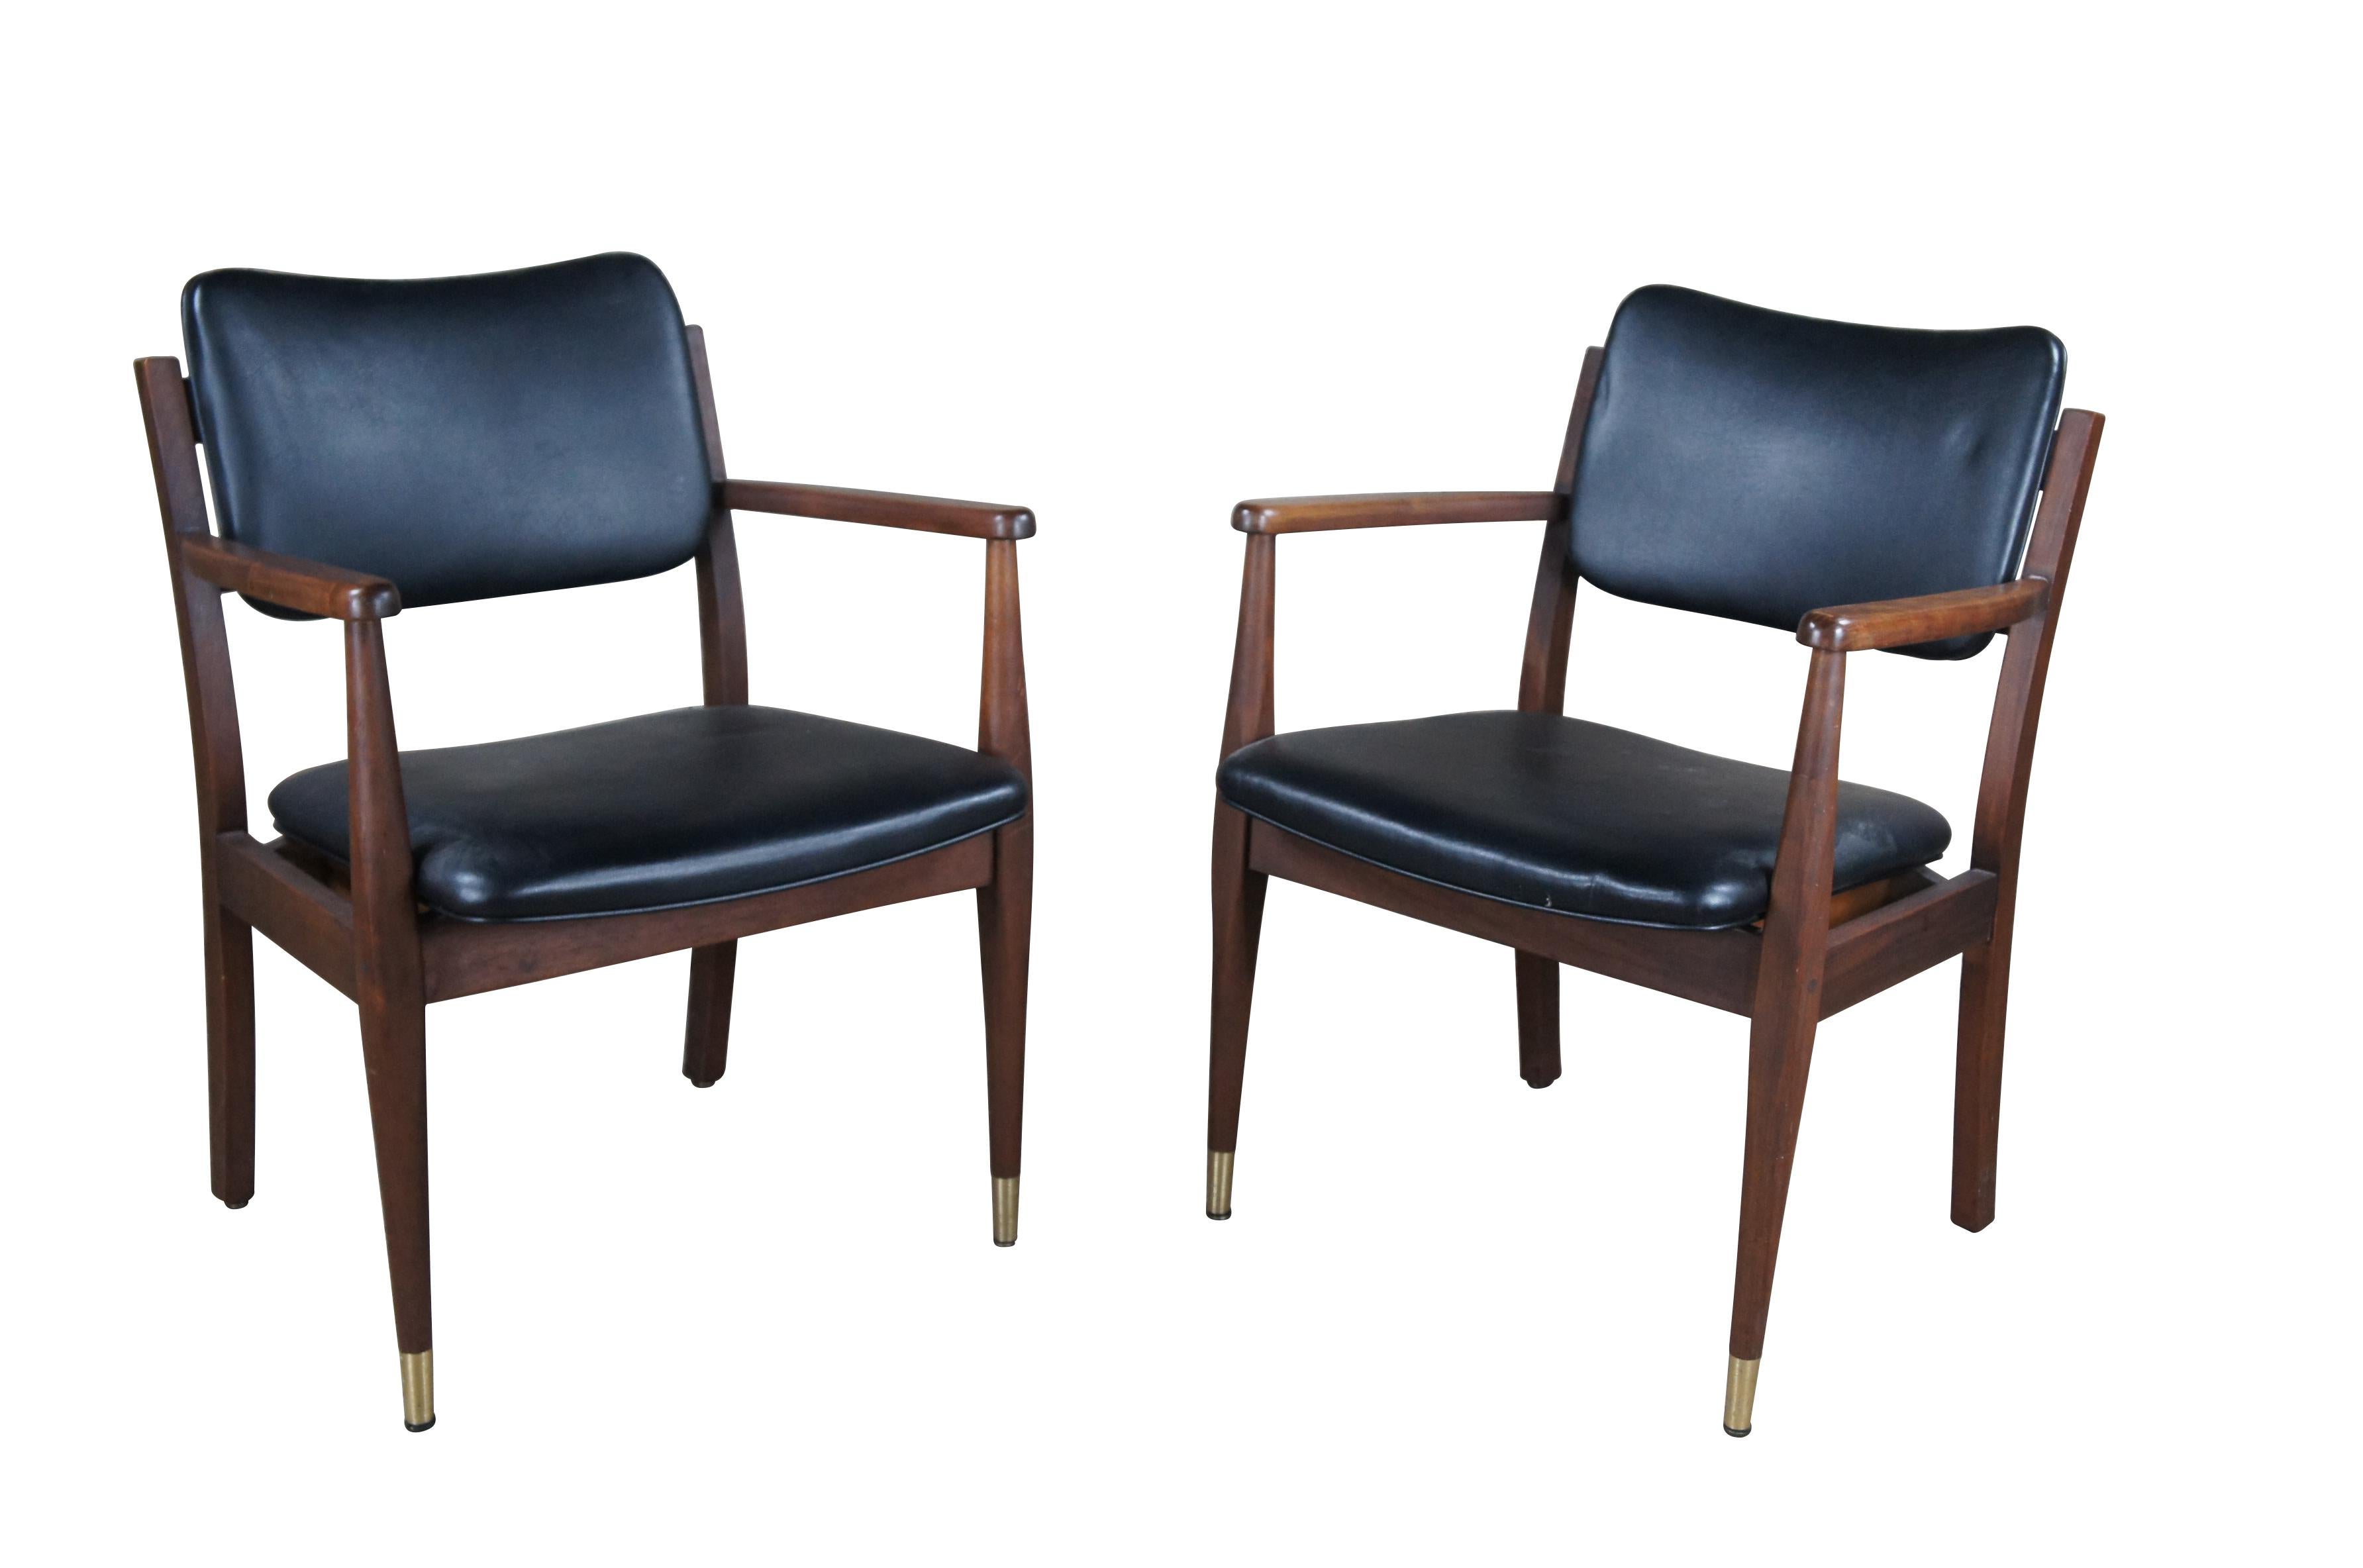 Paire de chaises à bras de style danois de Gregson Furniture Industries, circa 1983.  Fabriqué en noyer avec assise et dossier en cuir noir.  Le dos est orné de têtes de clous.  

Gregson Furniture Industries, Liberty North Carolina, a été fondée en